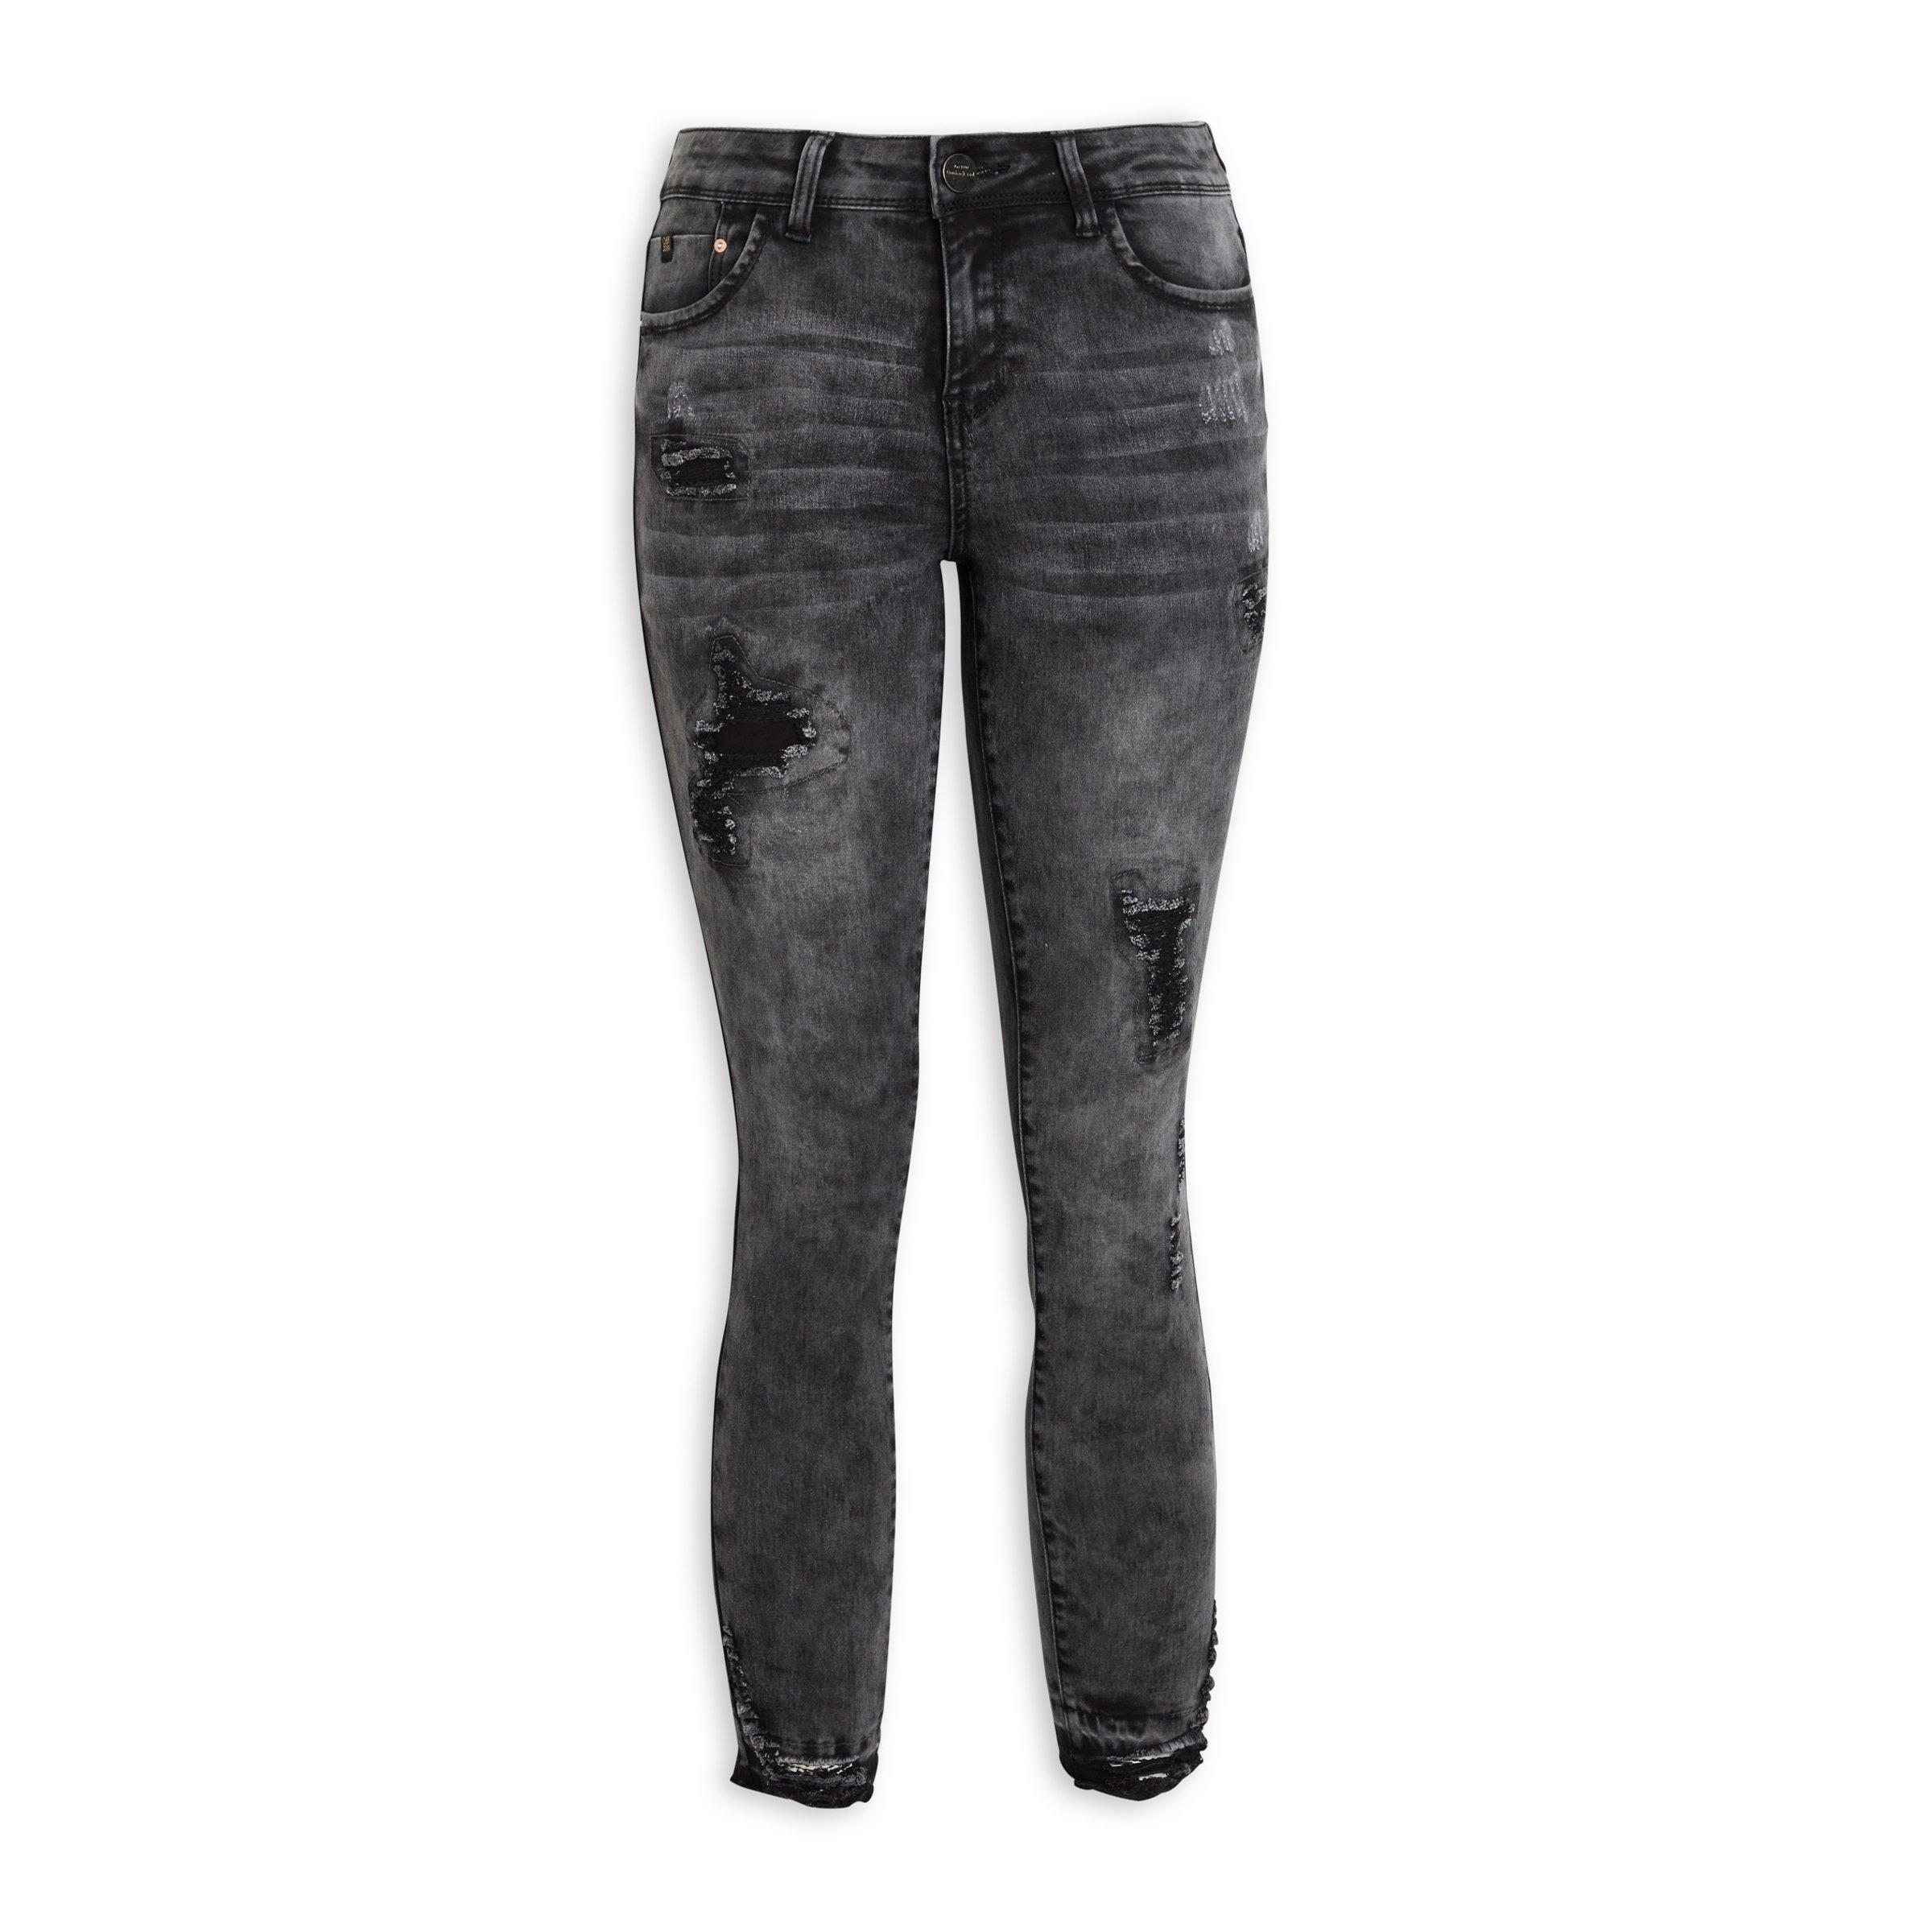 Buy OBR Grey Super Skinny Jeans Online | Truworths